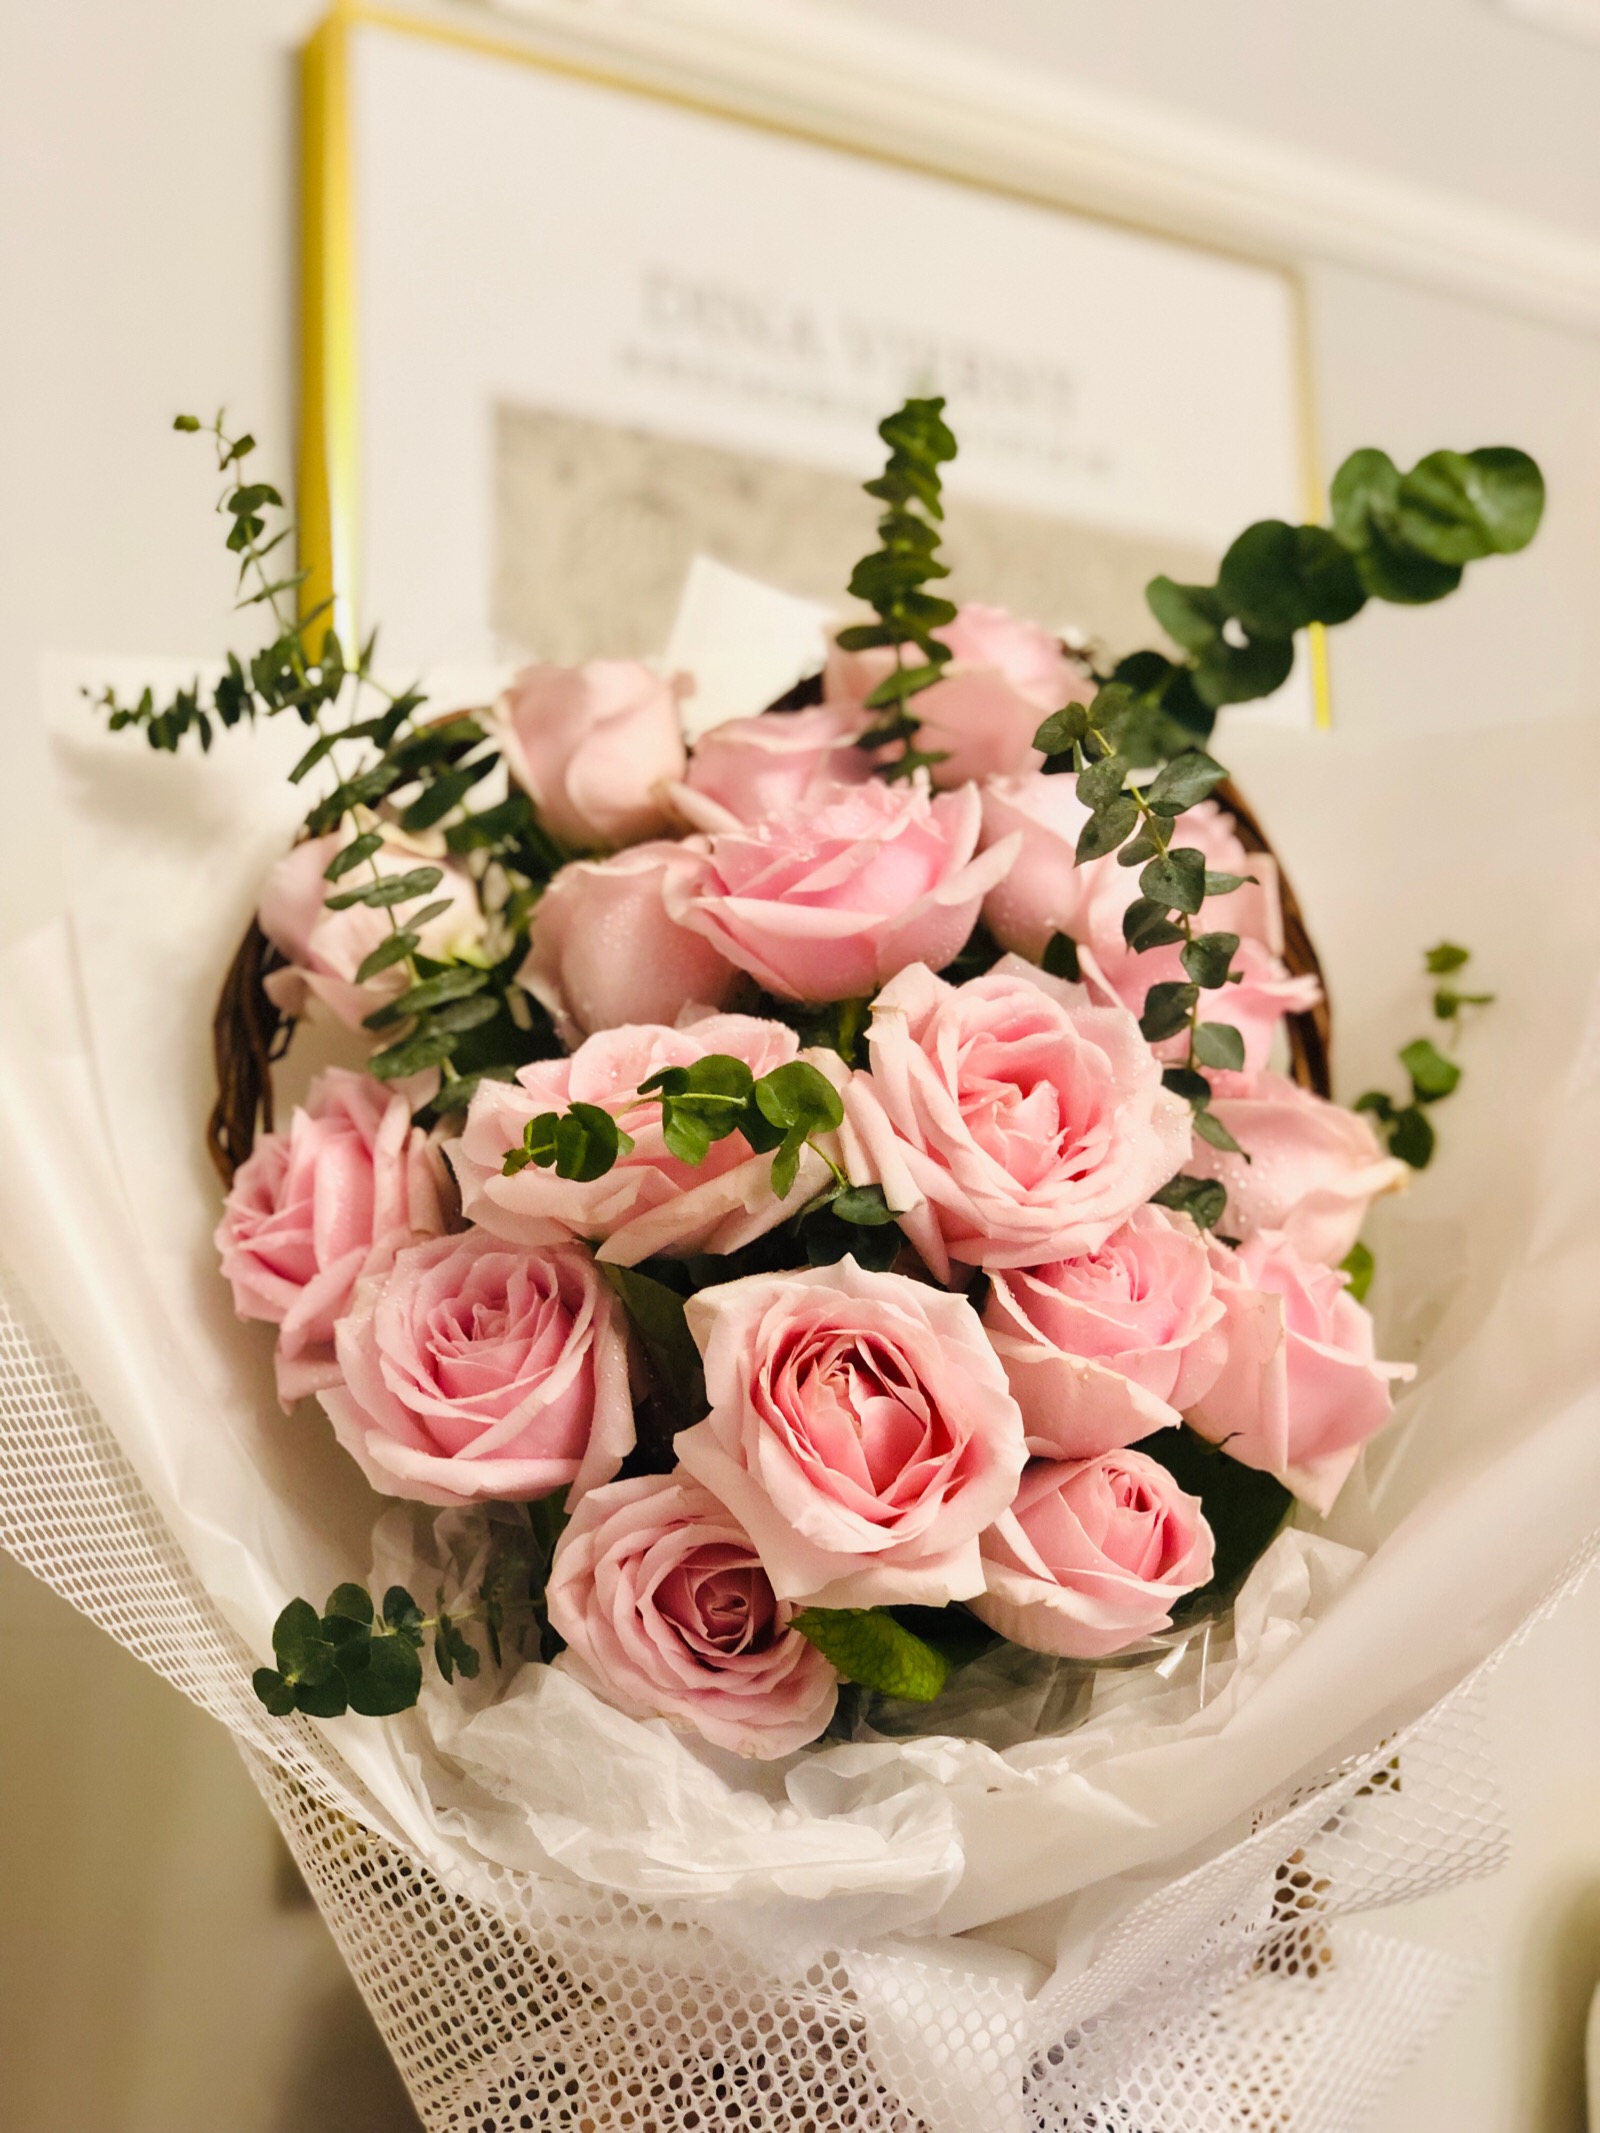 粉色玫瑰花宽屏高清电脑桌面壁纸大全-植物壁纸-壁纸下载-美桌网